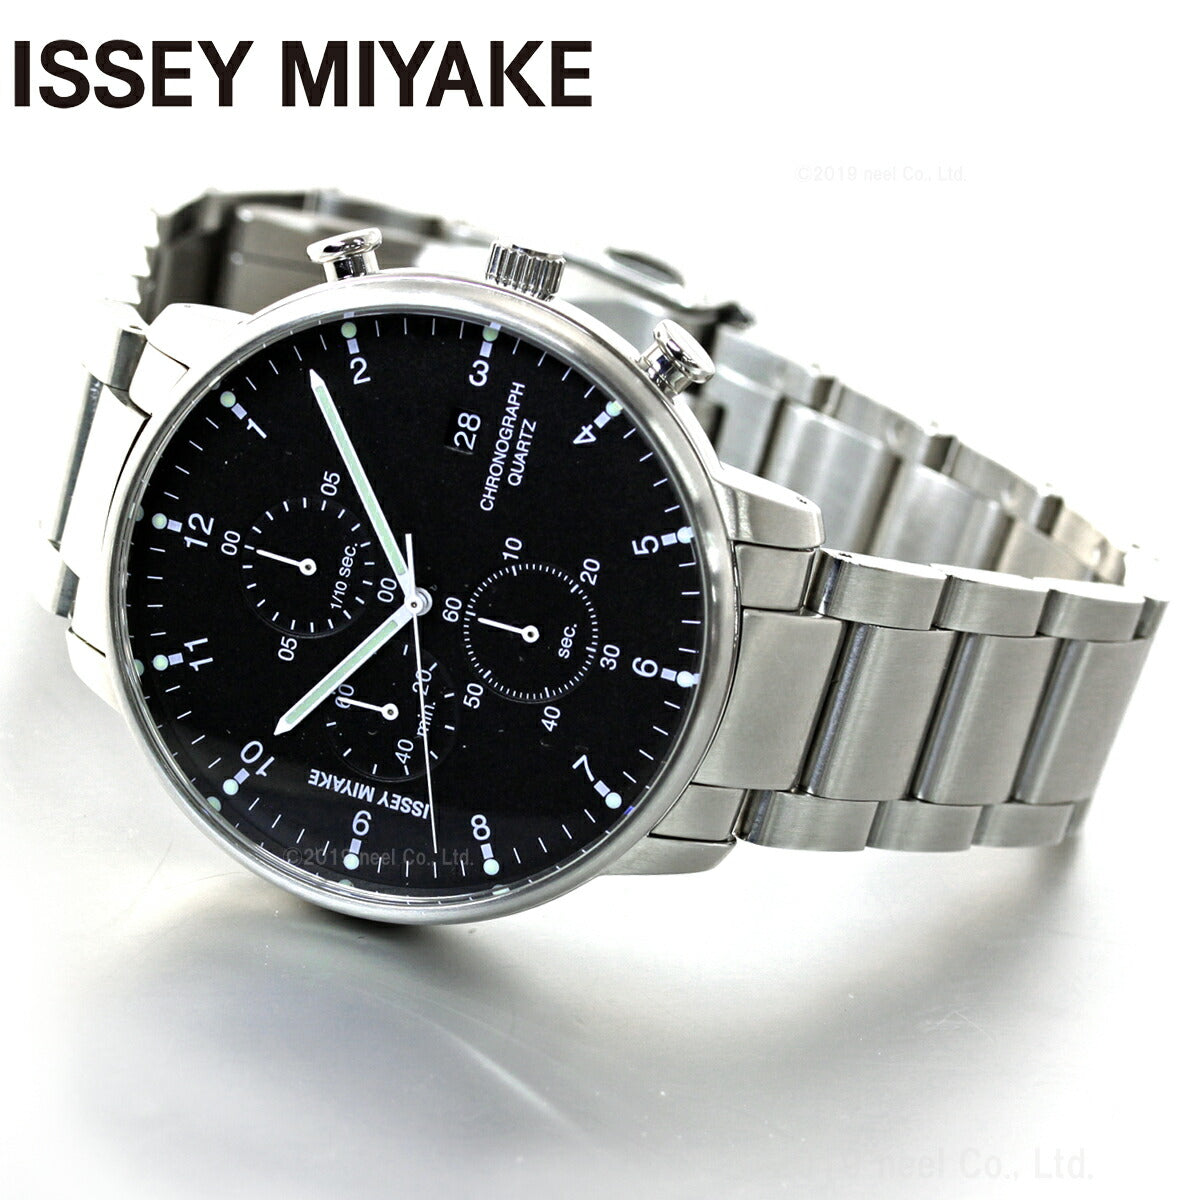 イッセイミヤケ ISSEY MIYAKE 腕時計 時計 メンズ C シー 岩崎一郎デザイン クロノグラフ NYAD001